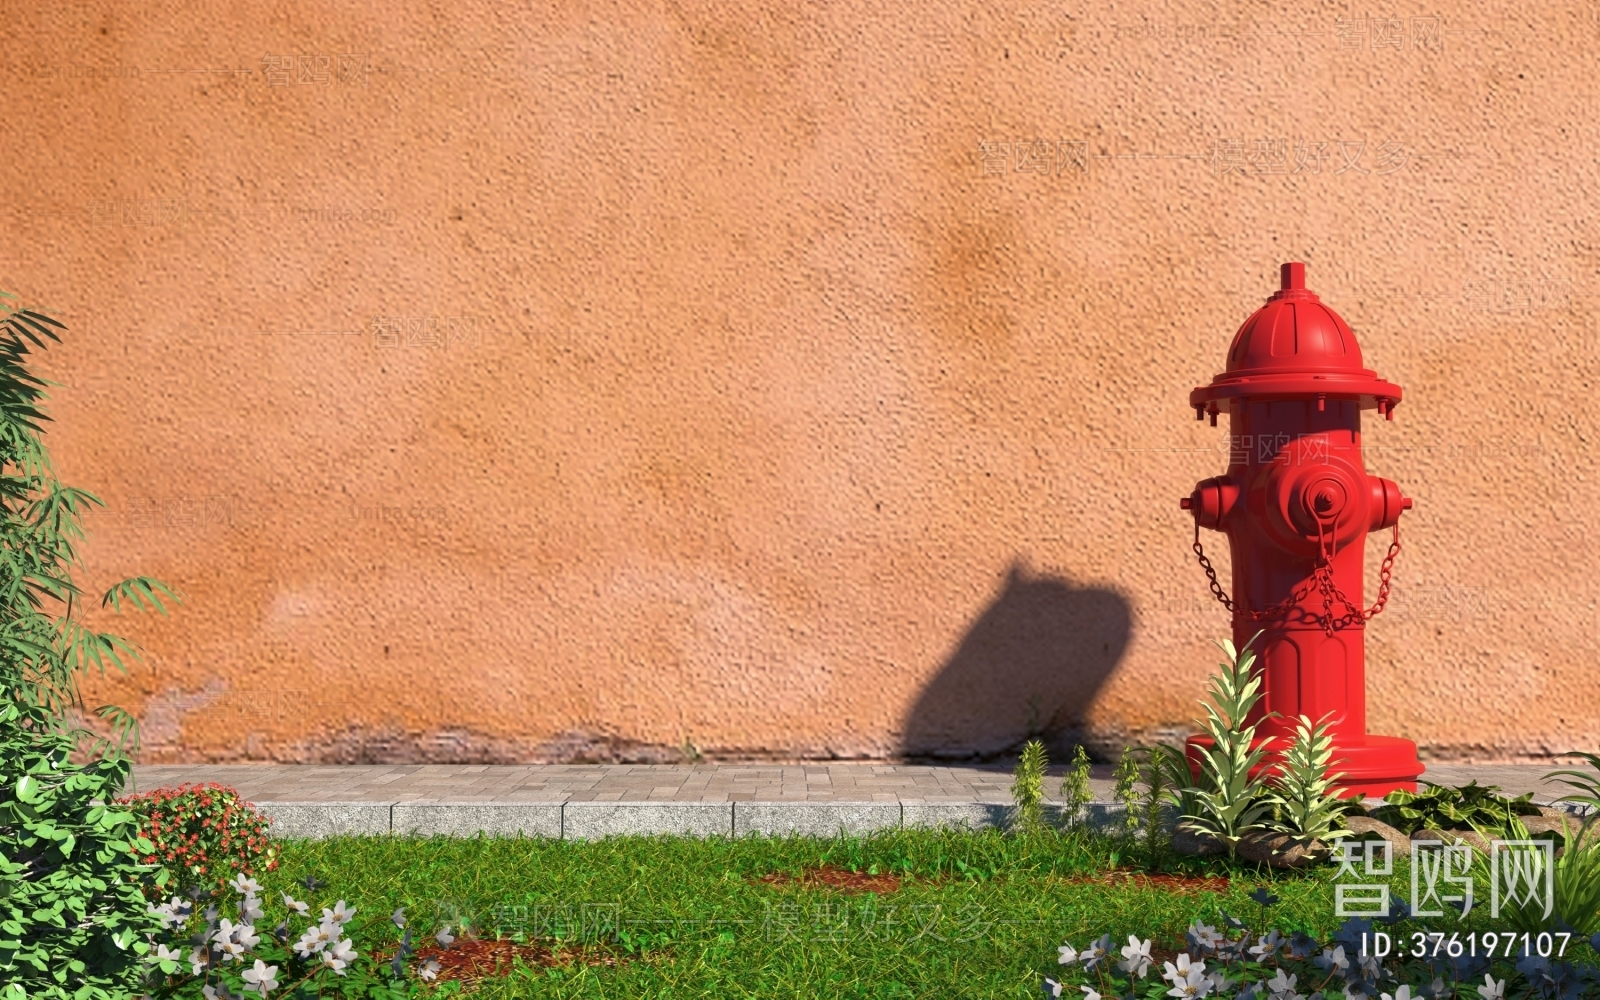 Modern Fire Hydrant